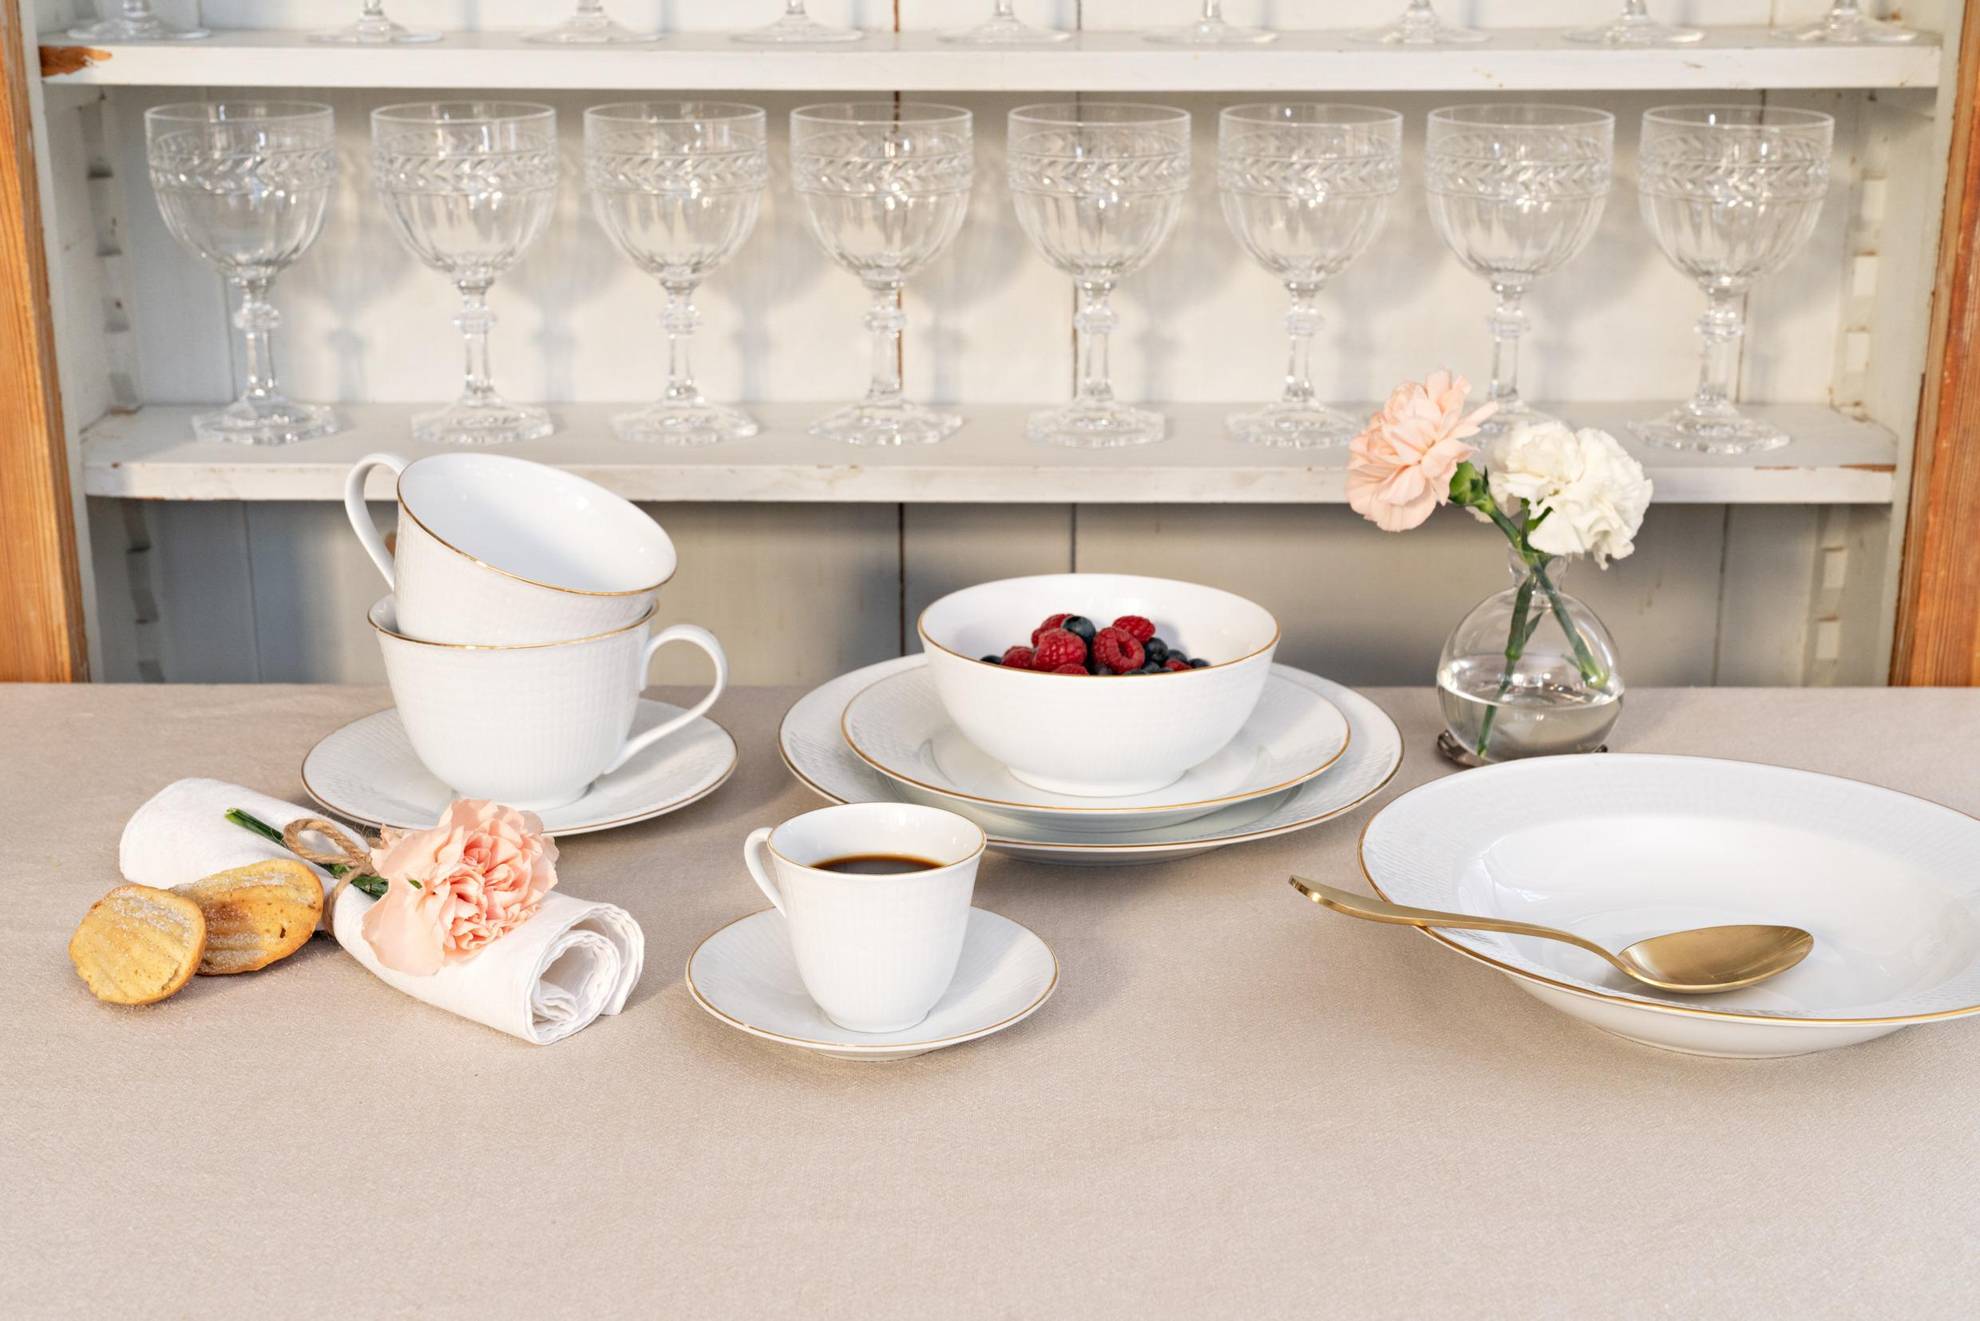 Ein Geschirrservice namens „Swedish Grace“ auf einem Tisch. Teller in verschiedenen Größen eine Schale mit Beeren, zwei Teetassen und eine Tasse Kaffee. Dahinter befindet sich ein Regal mit mehreren Weingläsern.